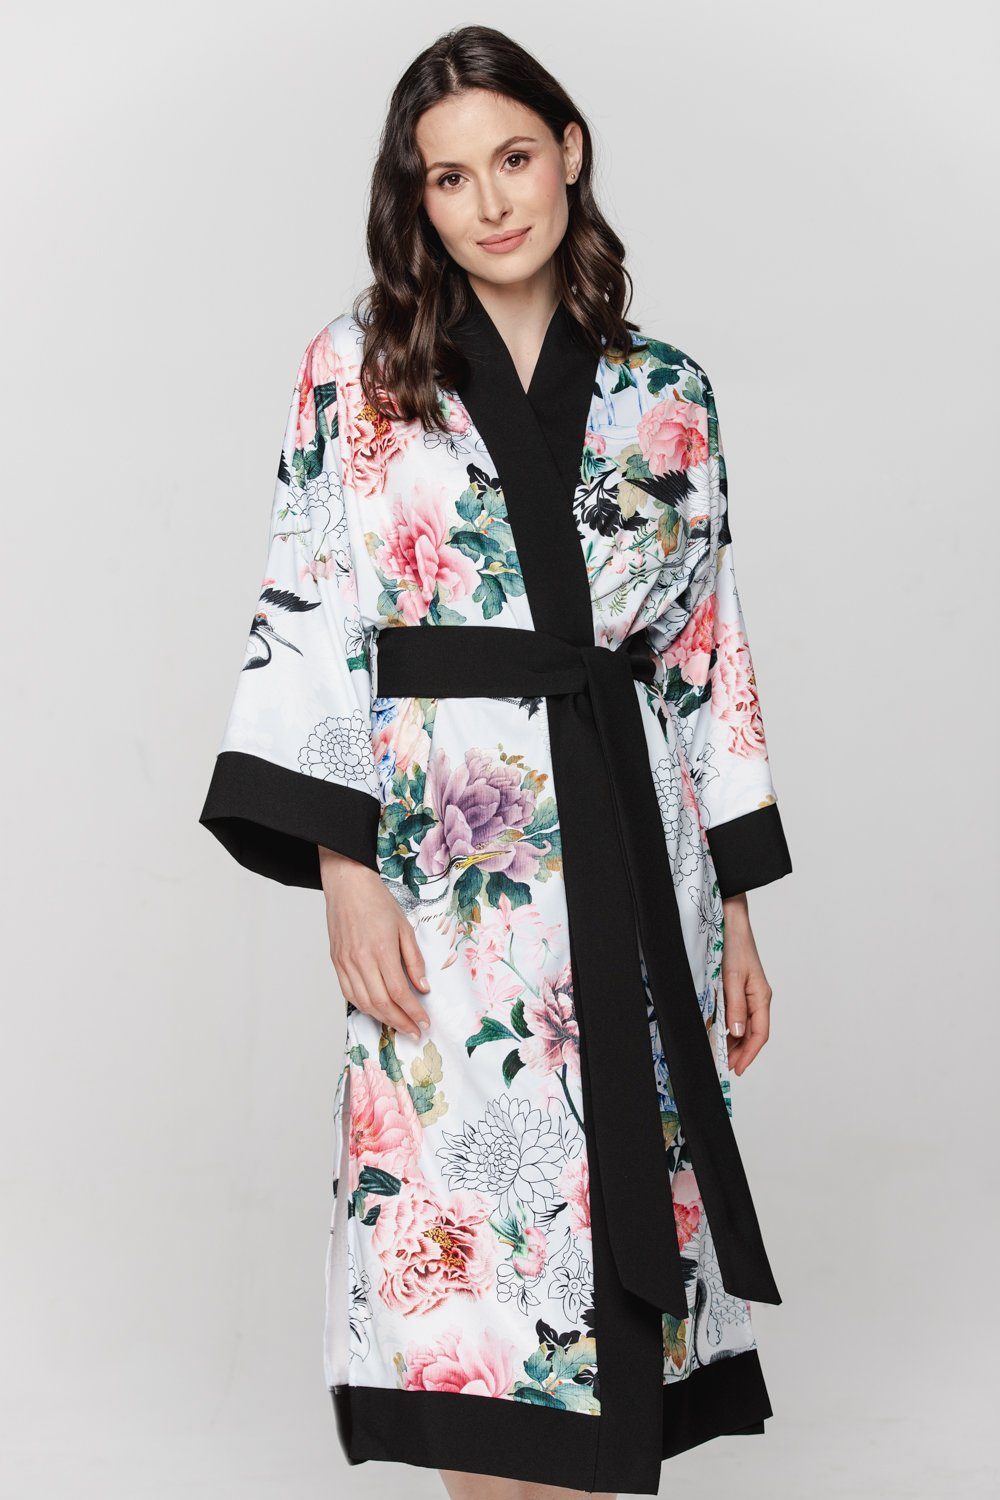 BABEES Kimono Hausmantel Damen Strandkleid Orient Morgenrock Bademantel Kimono